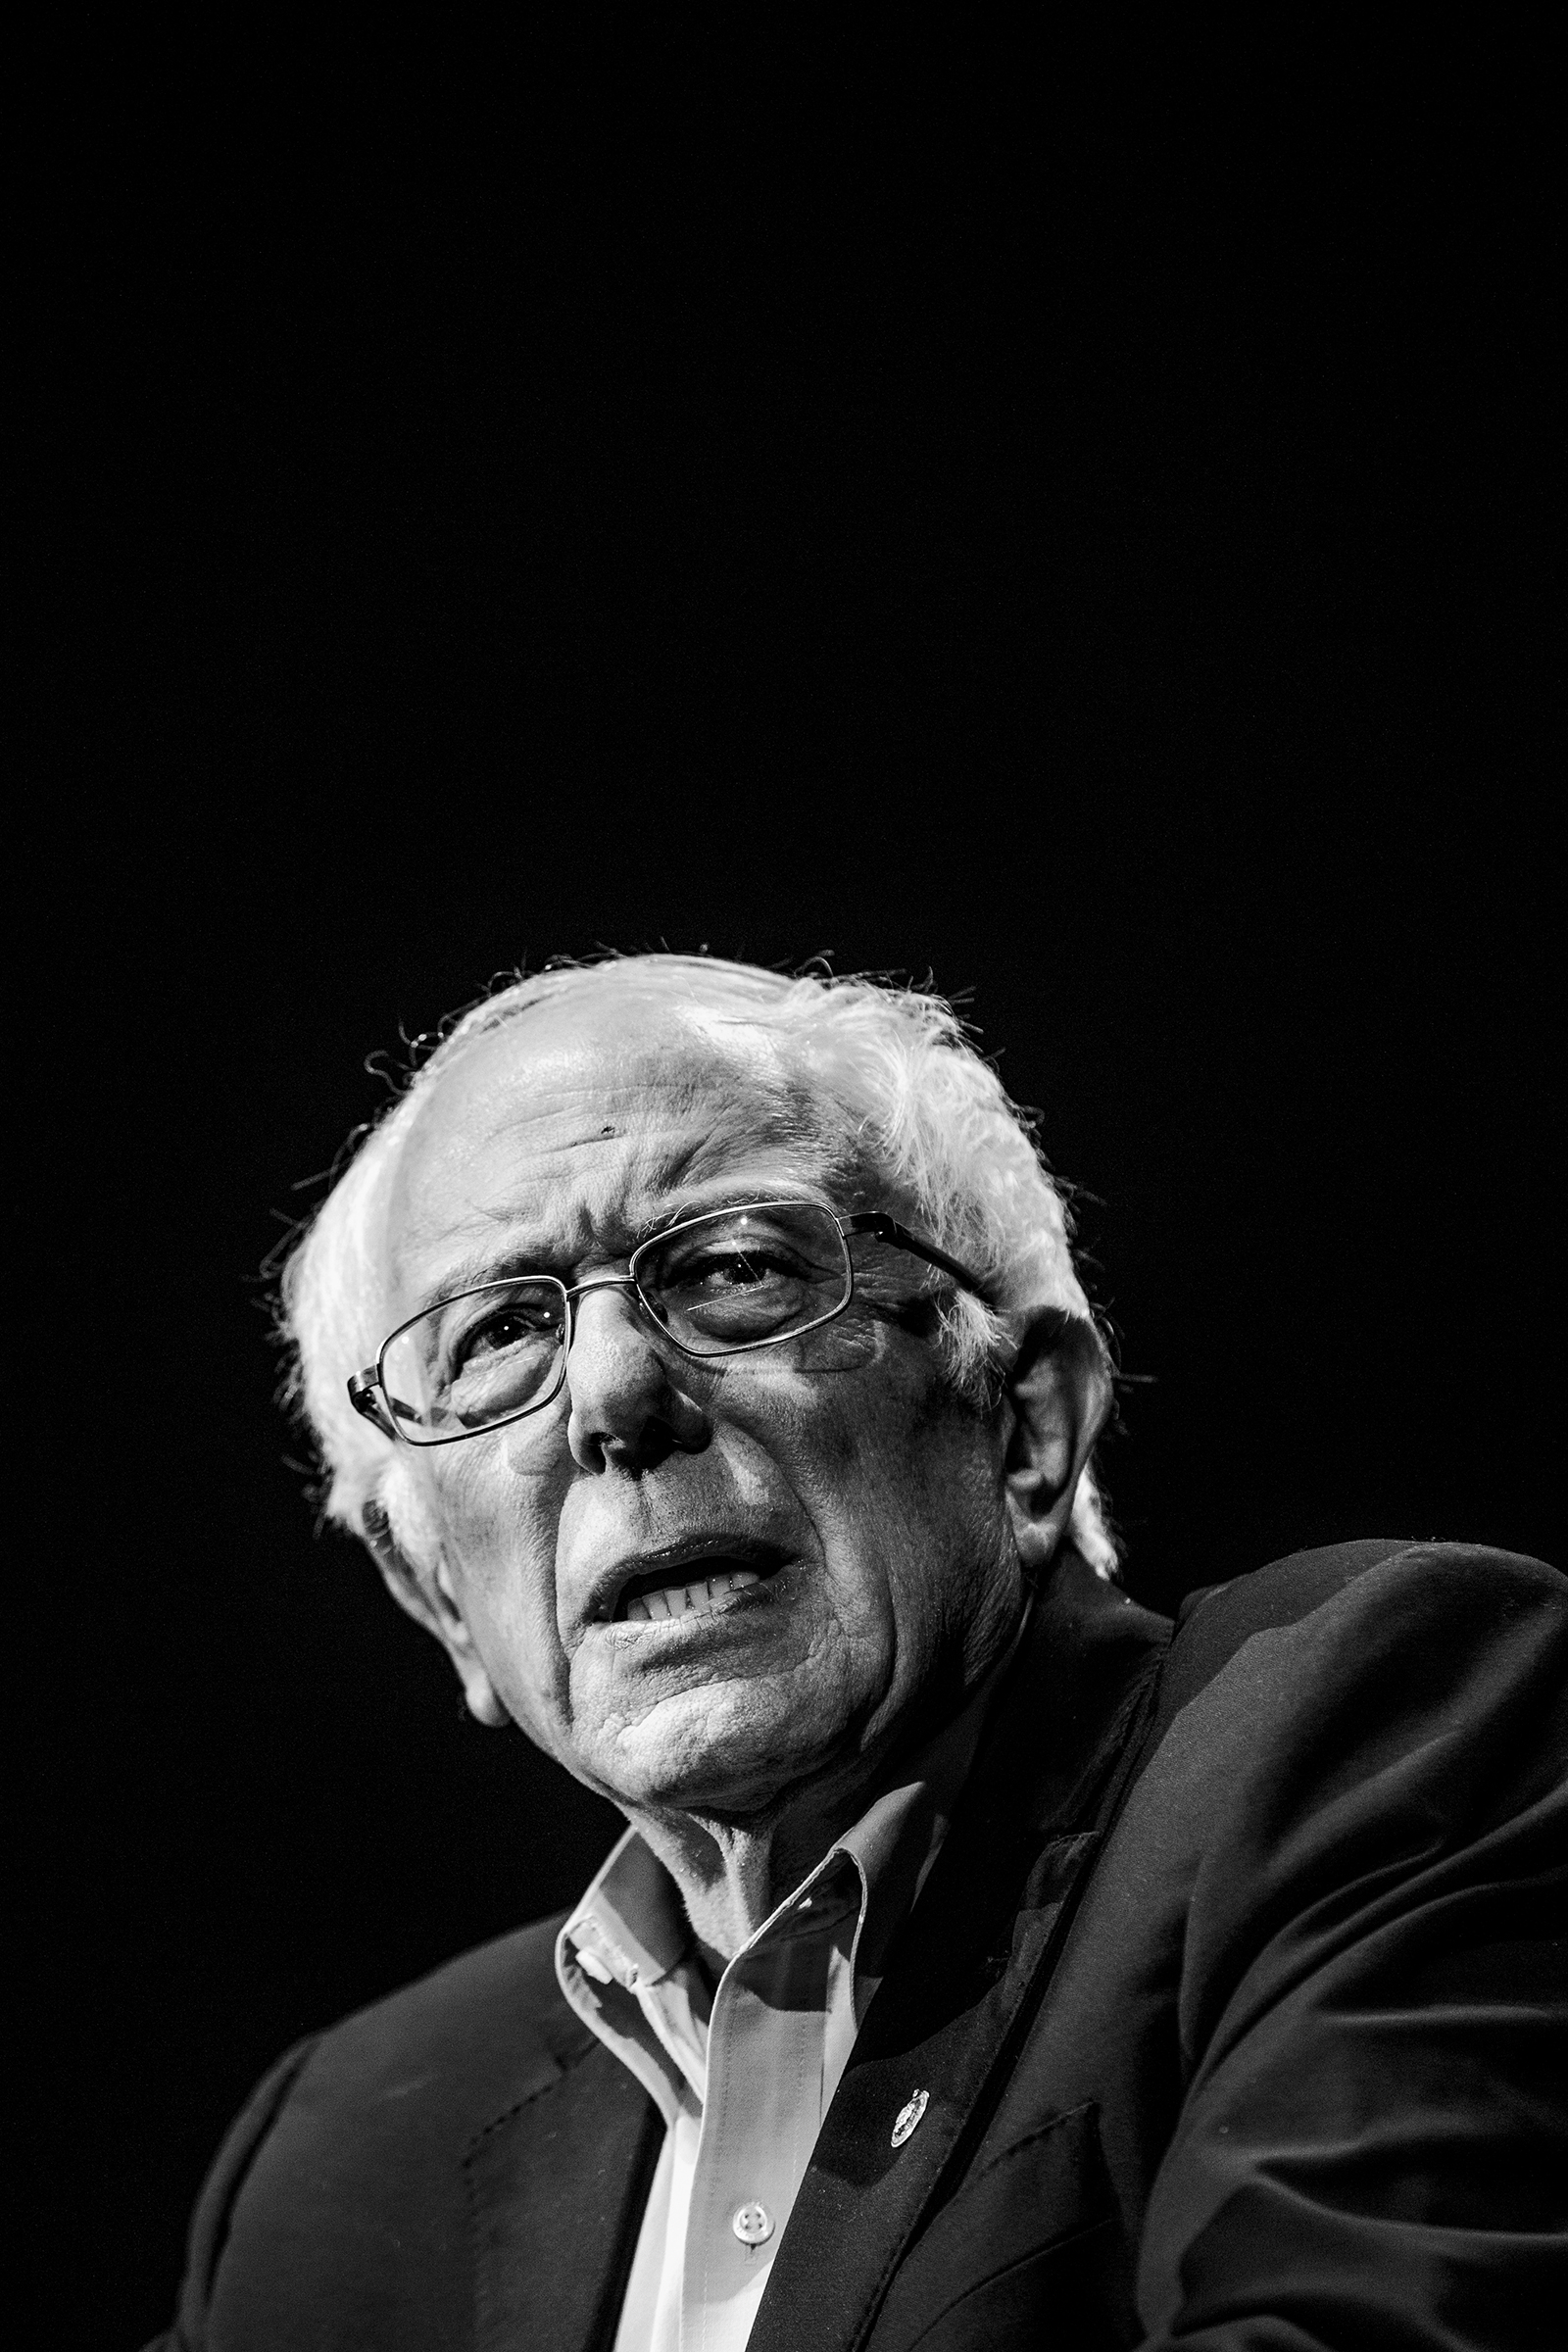 Sen. Bernie Sanders speaks at the Bernie Caucus Concert with band Vampire Weekend